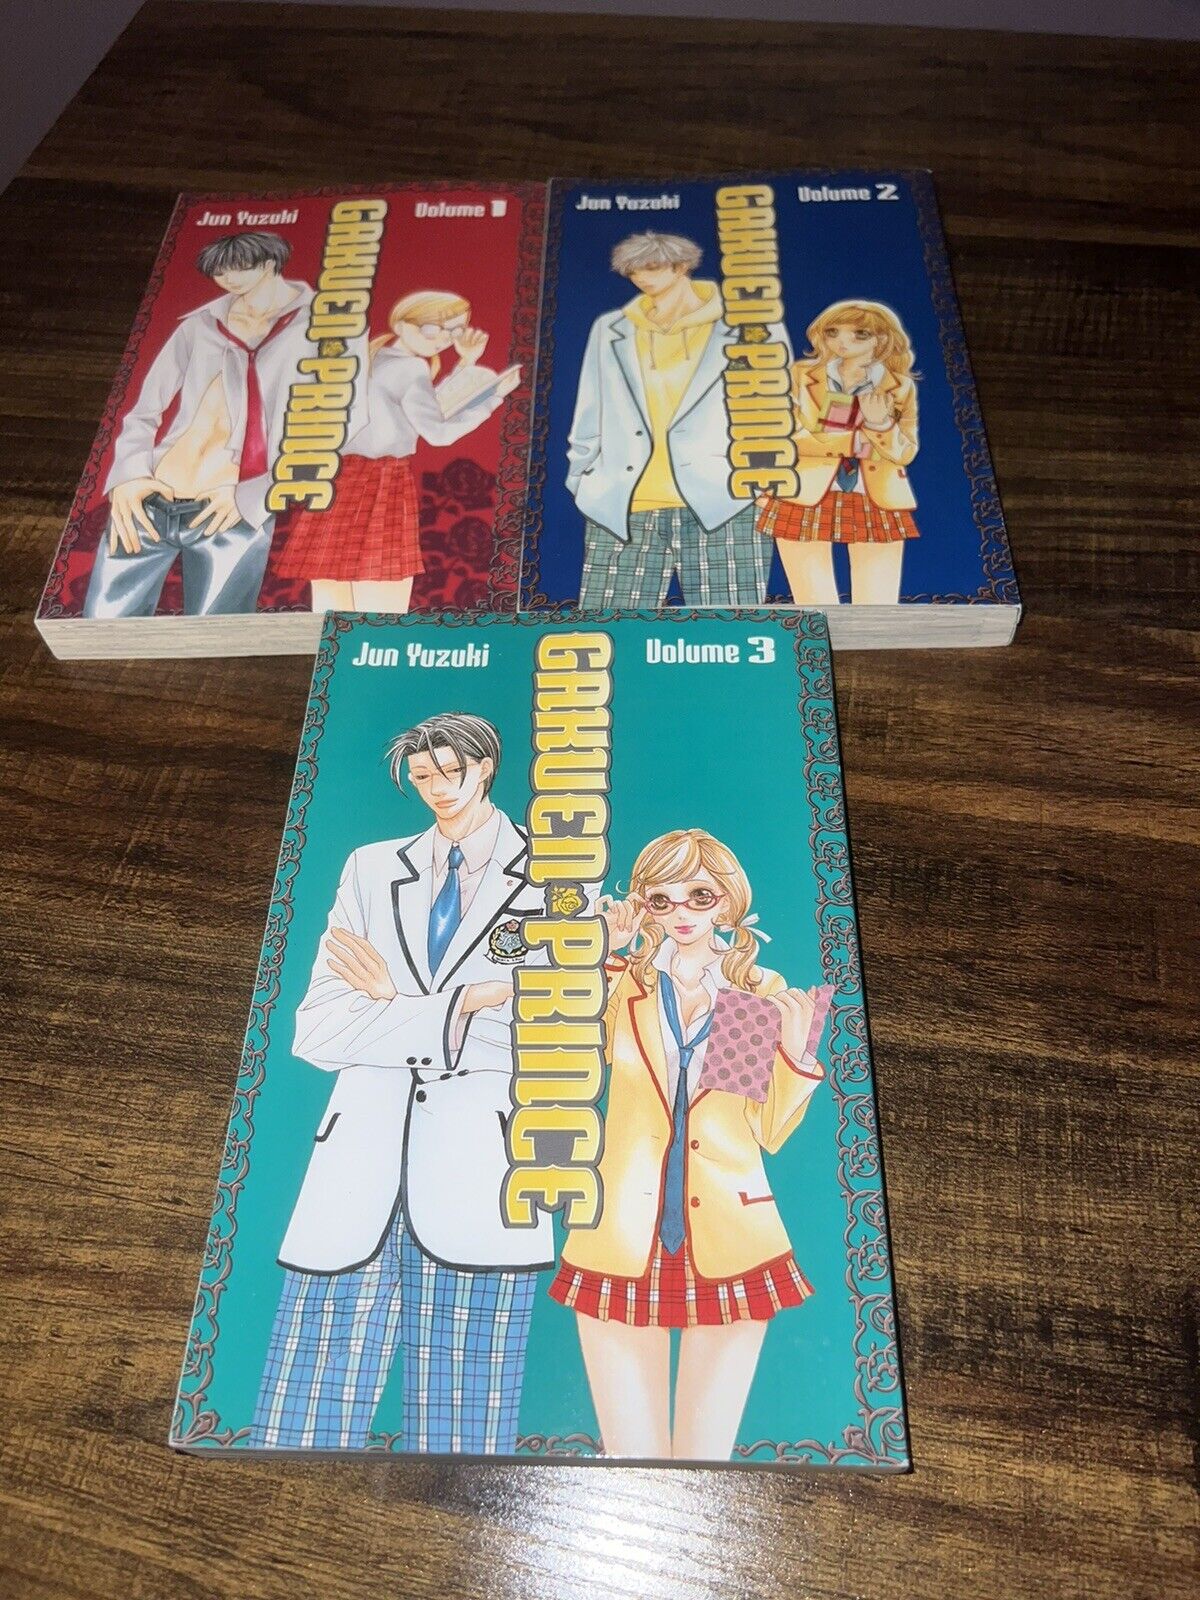 Gakuen Prince manga volume 1-3 Jun Yuzuki